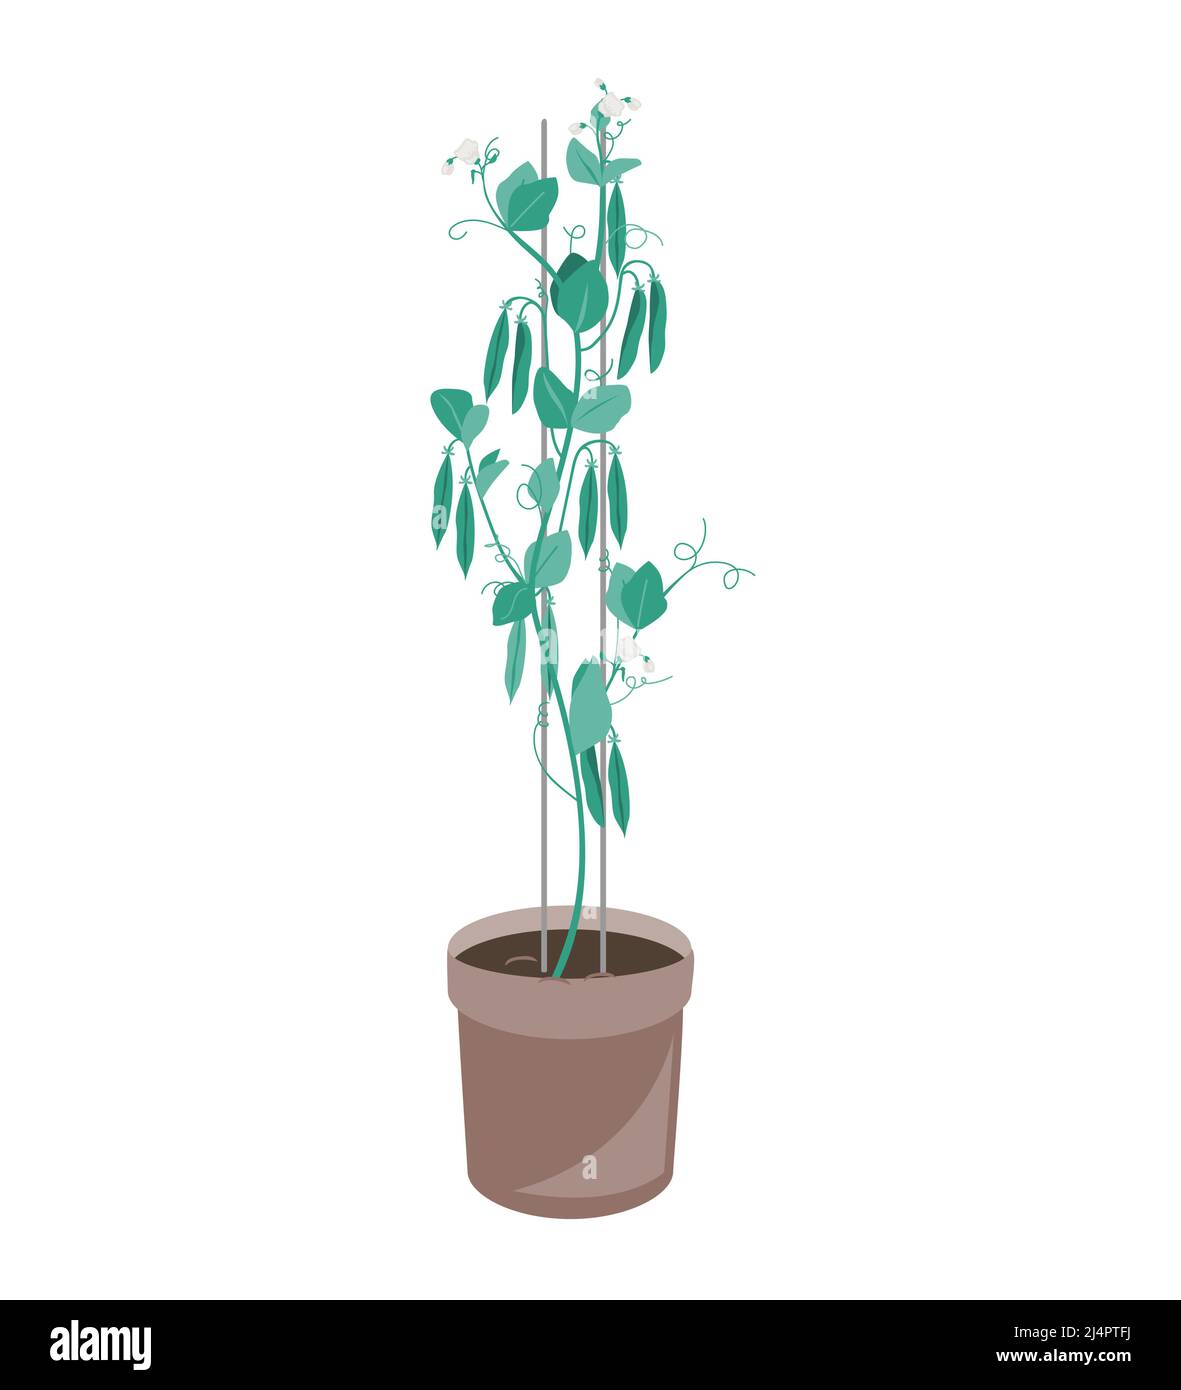 Plante de pois verts dans un pot de fleur. Illustration vectorielle isolée sur blanc Illustration de Vecteur